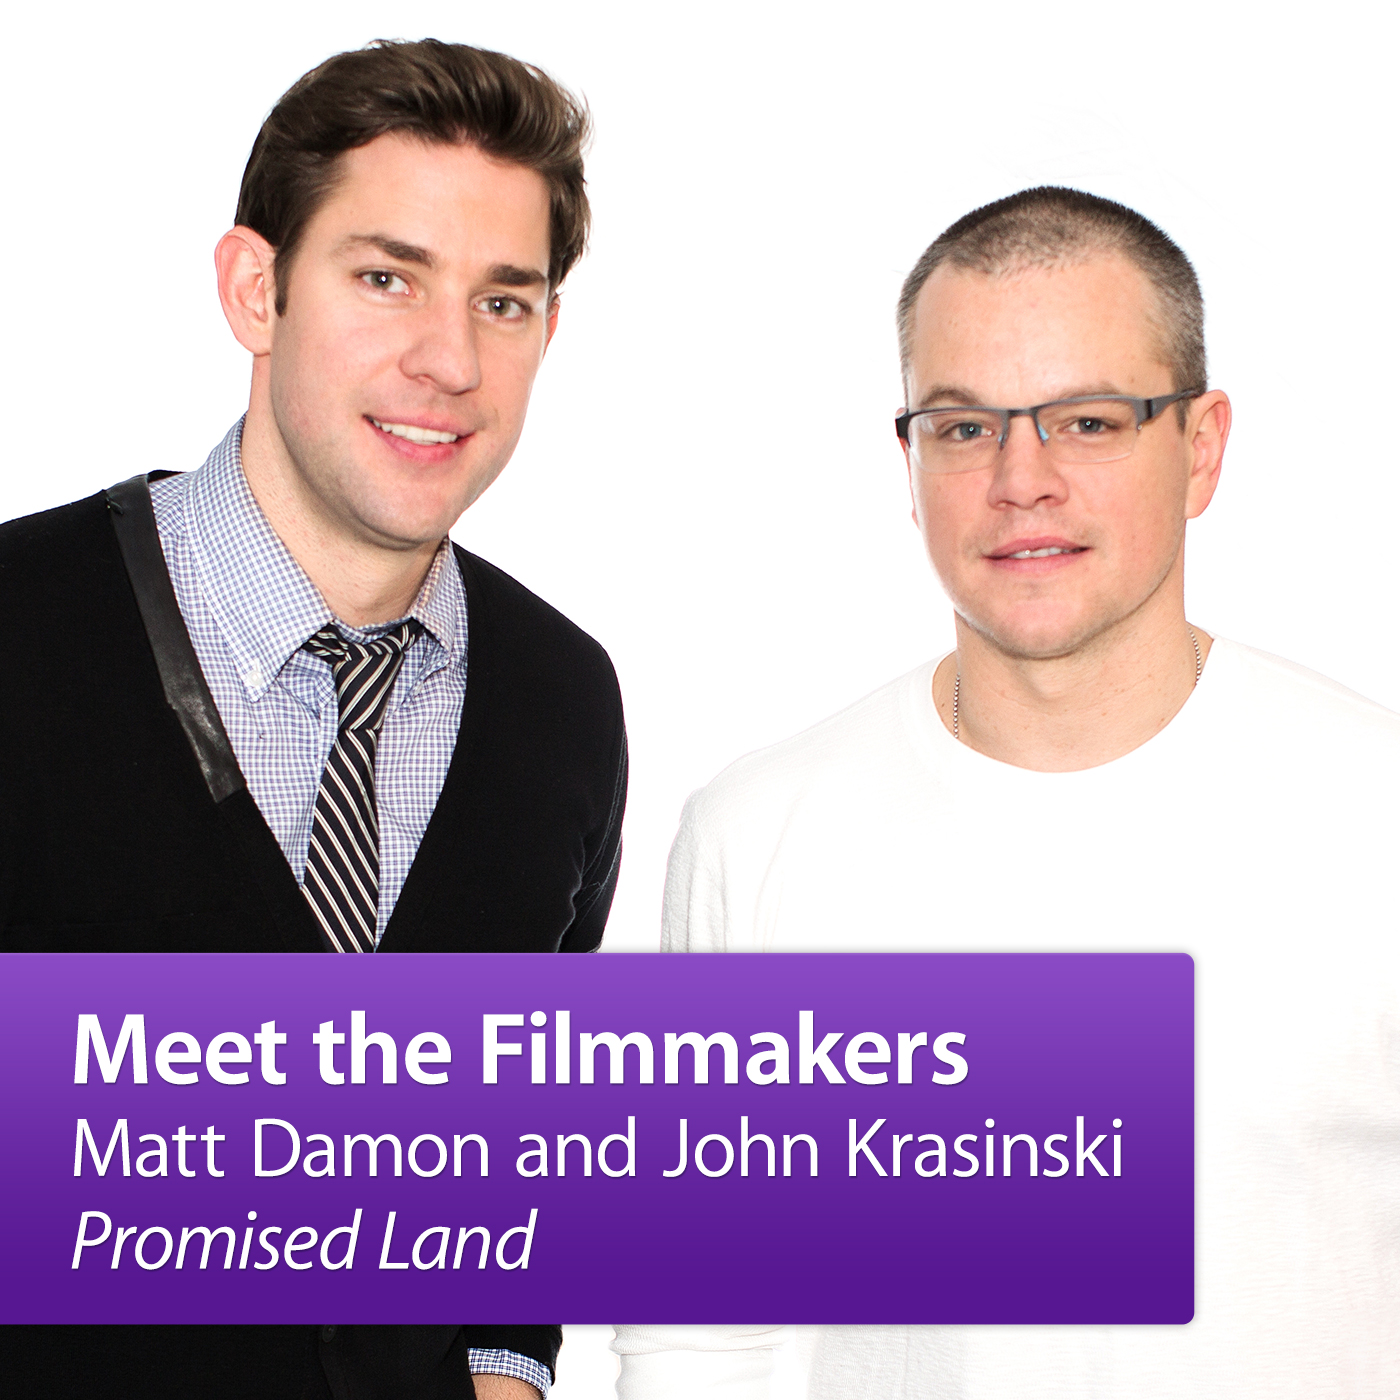 Matt Damon and John Krasinski, "Promised Land": Meet the Filmmakers